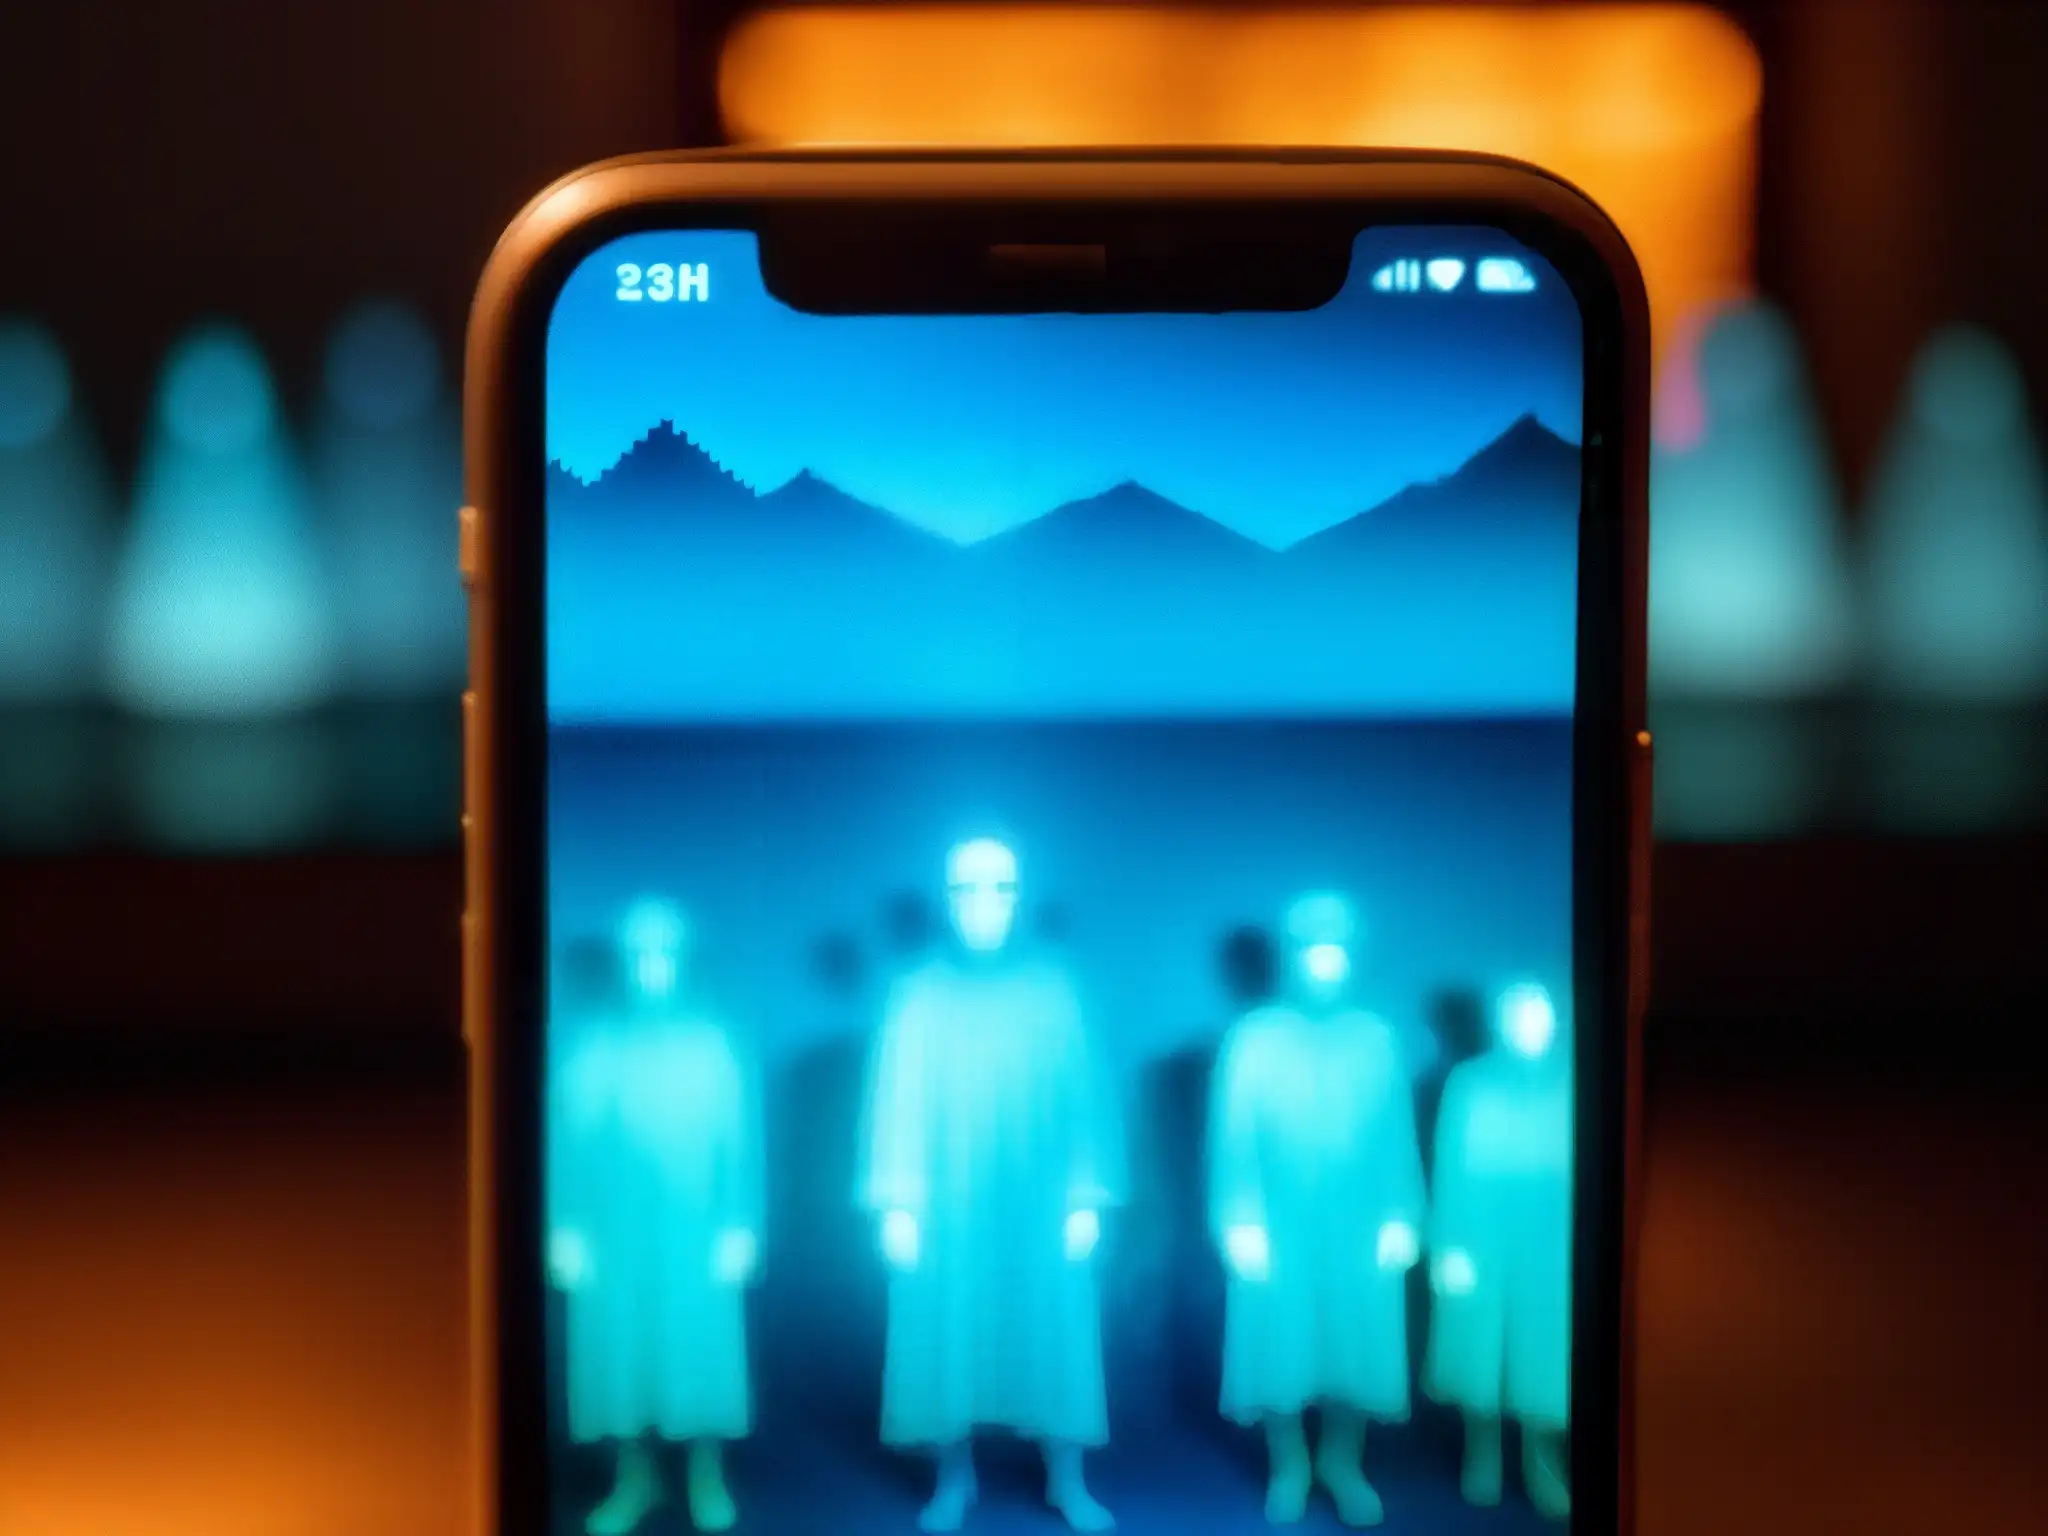 Imagen inquietante de fenómenos paranormales en dispositivos electrónicos: figuras fantasmales y distorsiones en pantalla de smartphone agrietada